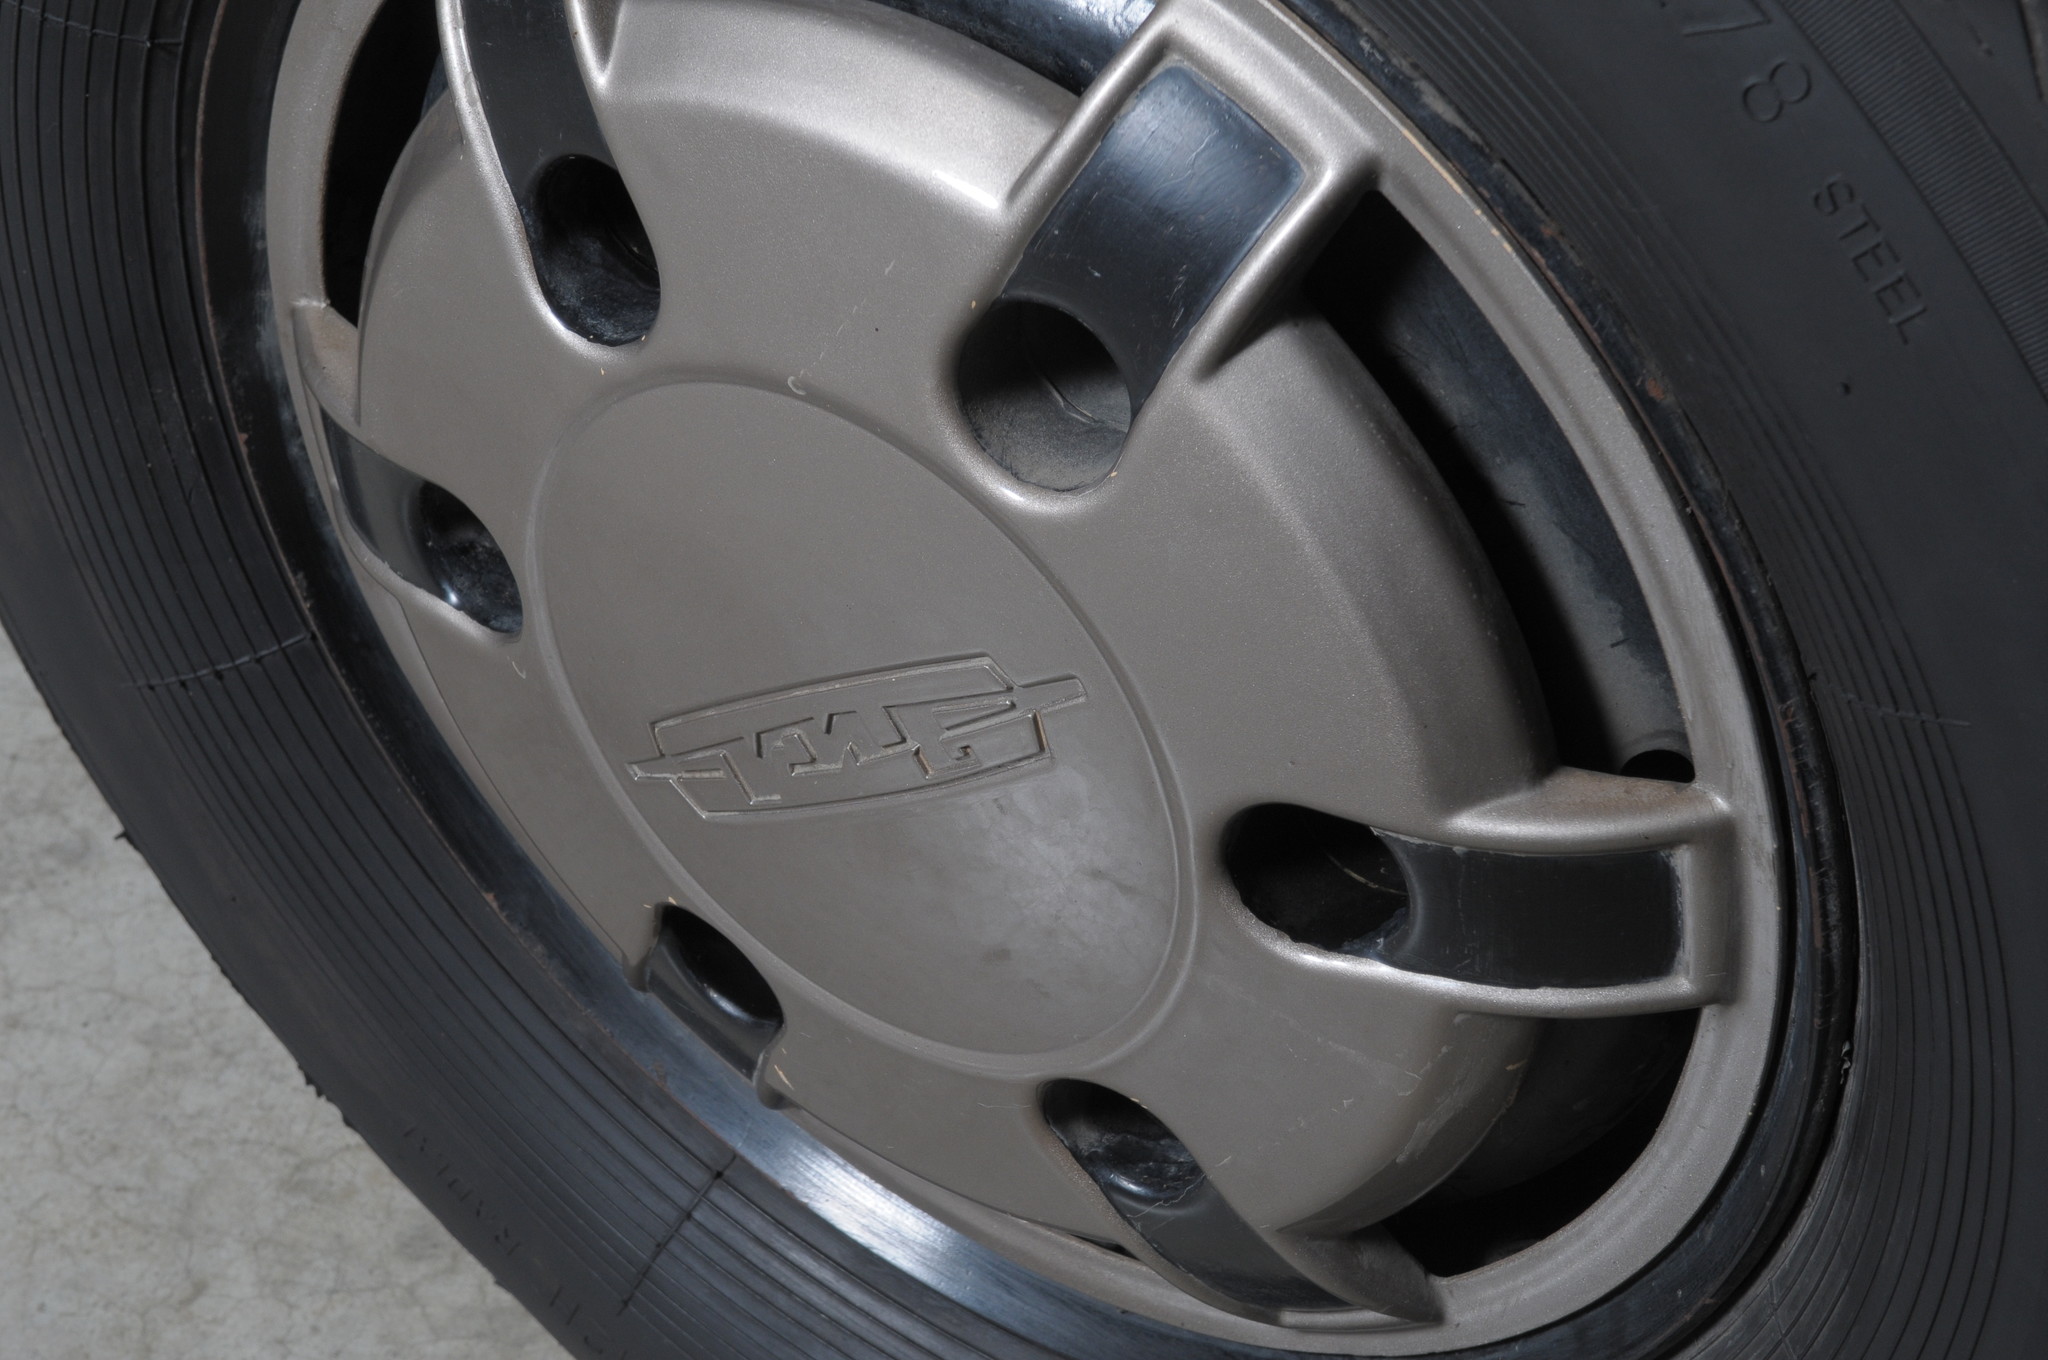 Оригинальный дизайн колёсных дисков ЗИЛ-4102 был защищён специальным патентом